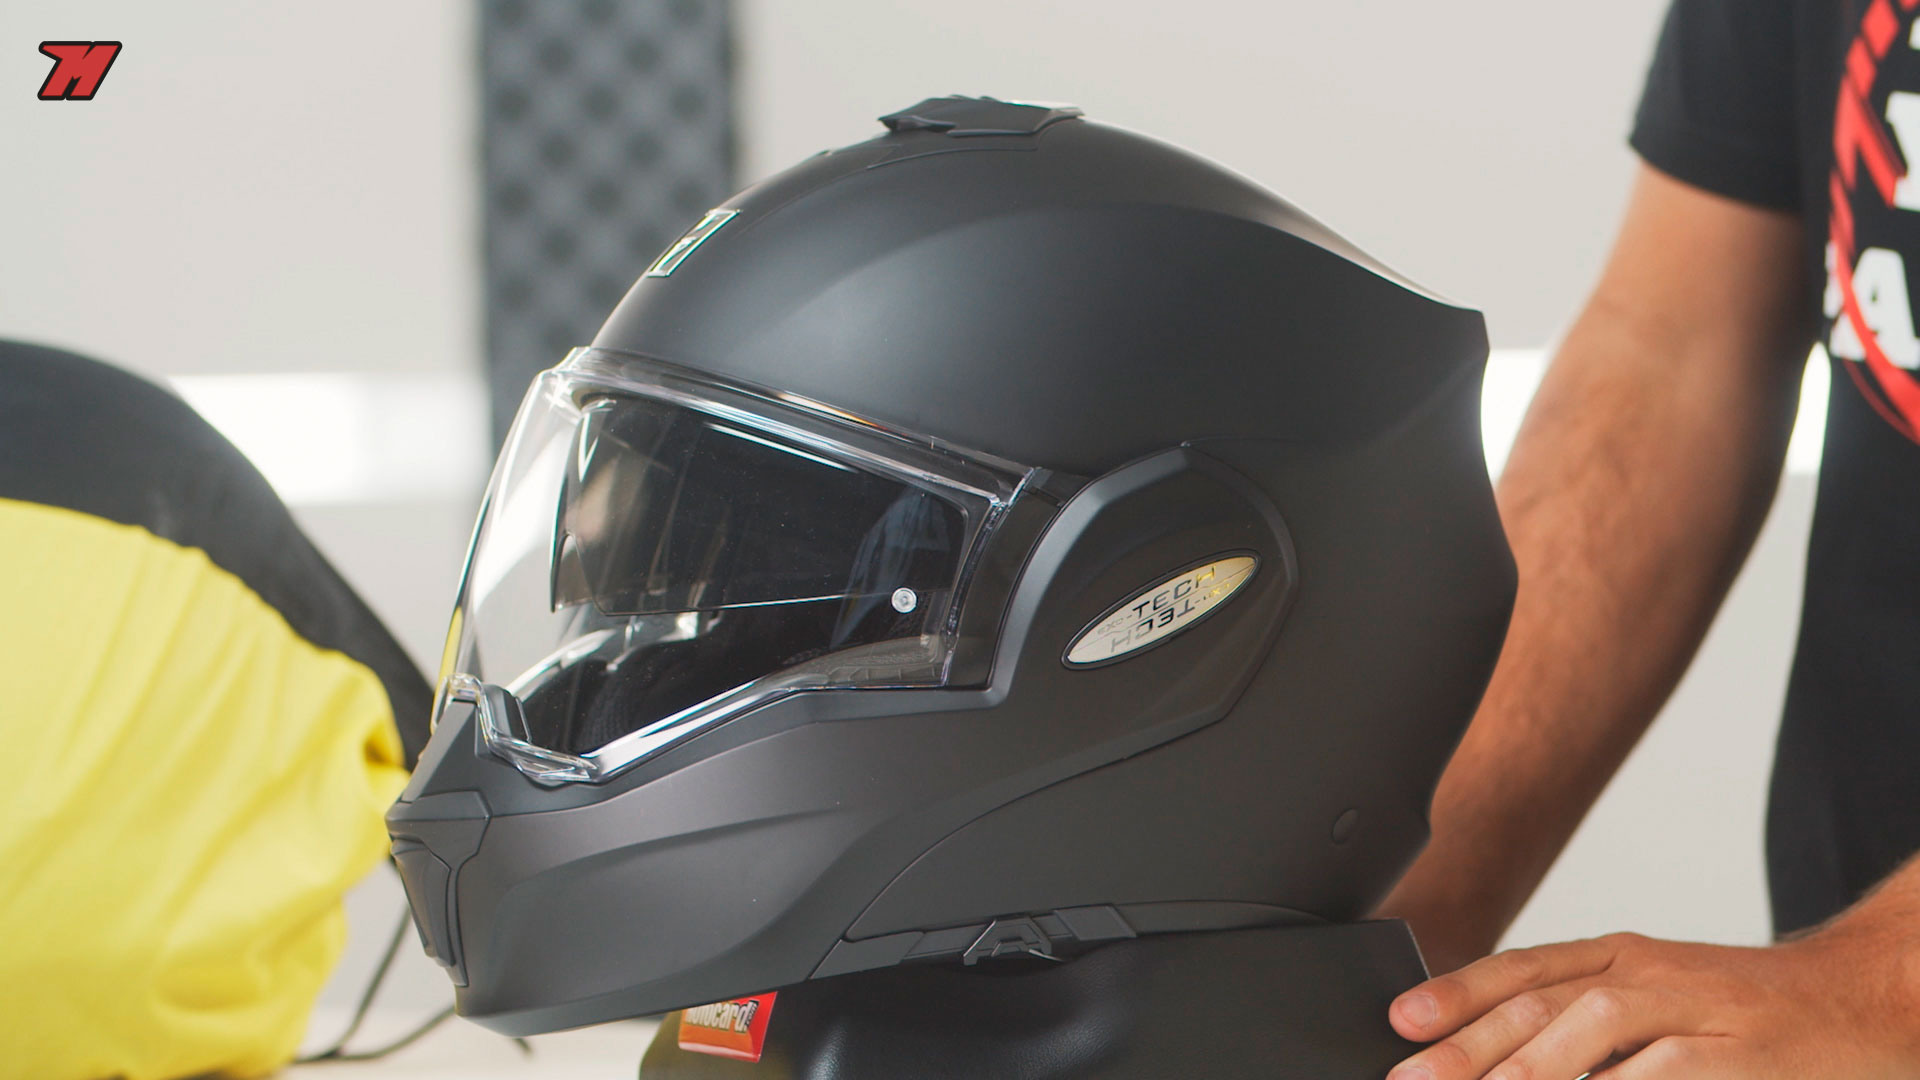 Review: Scorpion el próximo casco de modular superventas